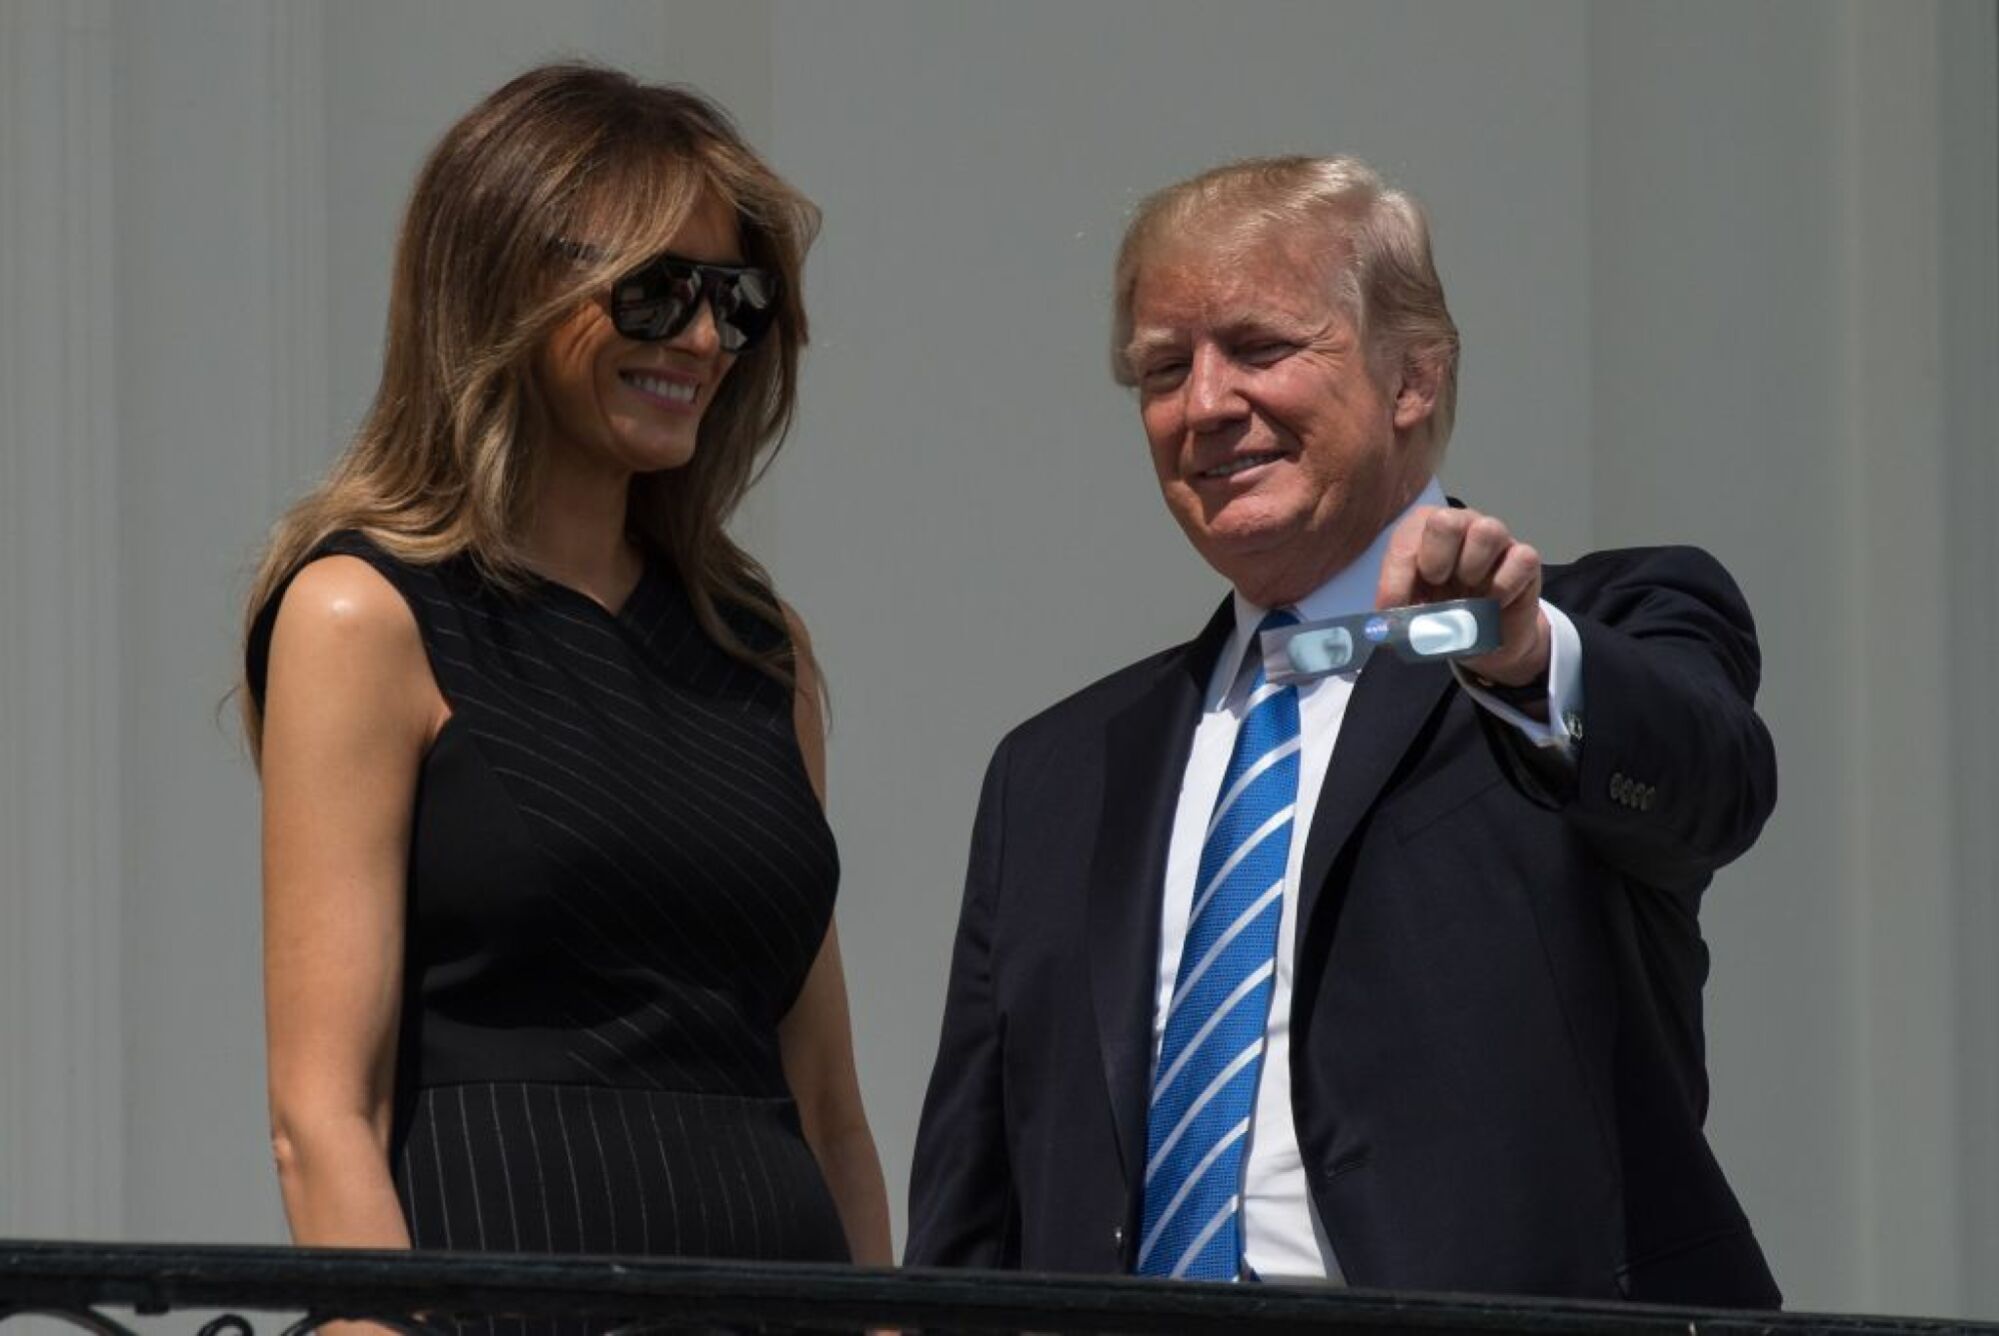 Le président Donald Trump brandit ses lunettes à éclipse